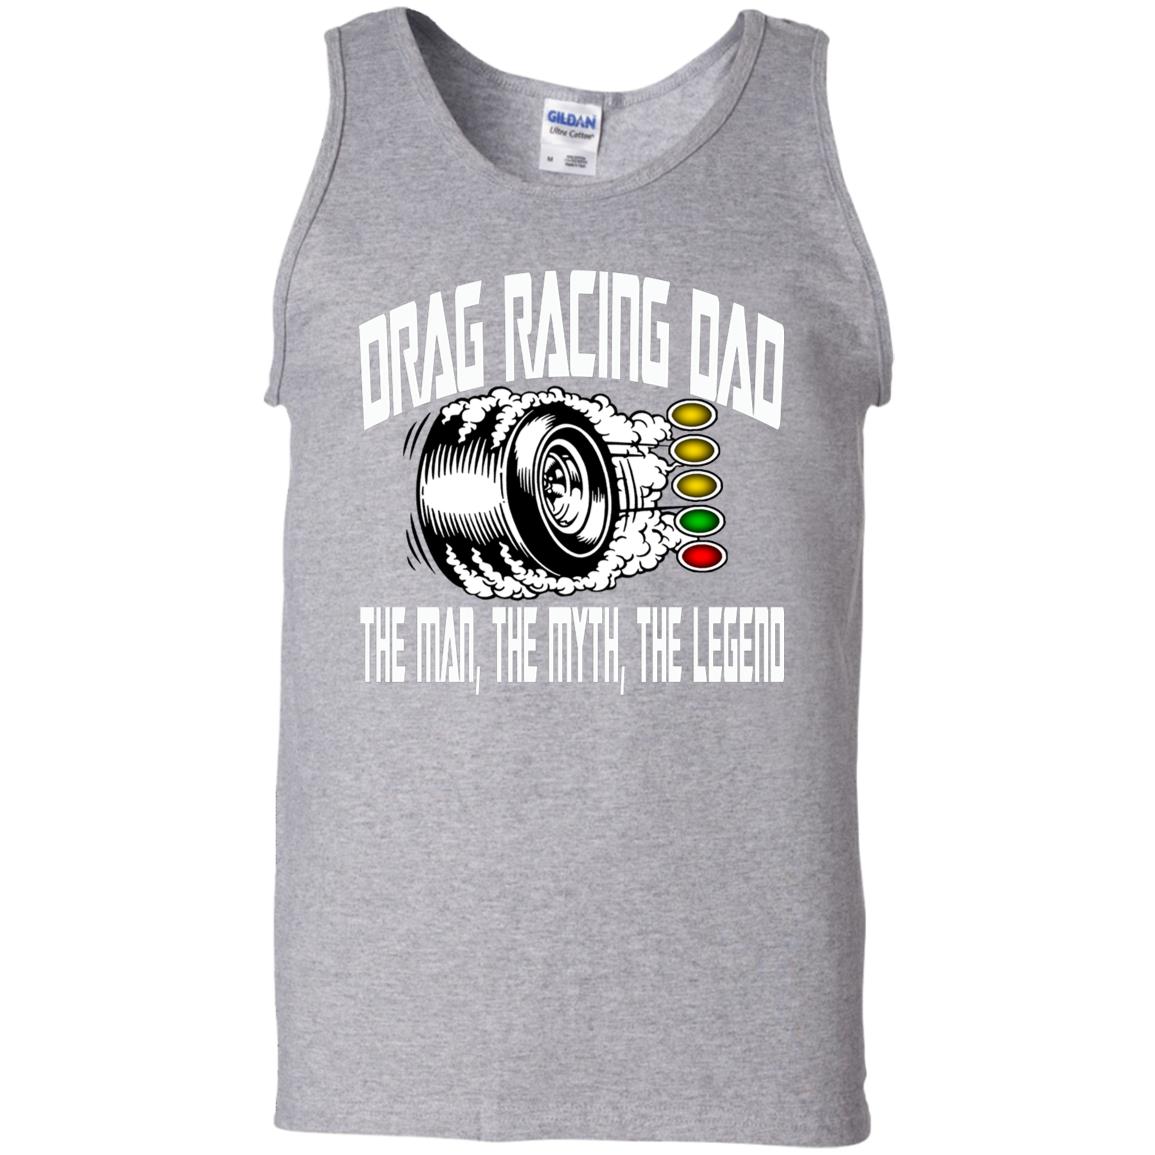 Drag Racing Dad 100% Cotton Tank Top